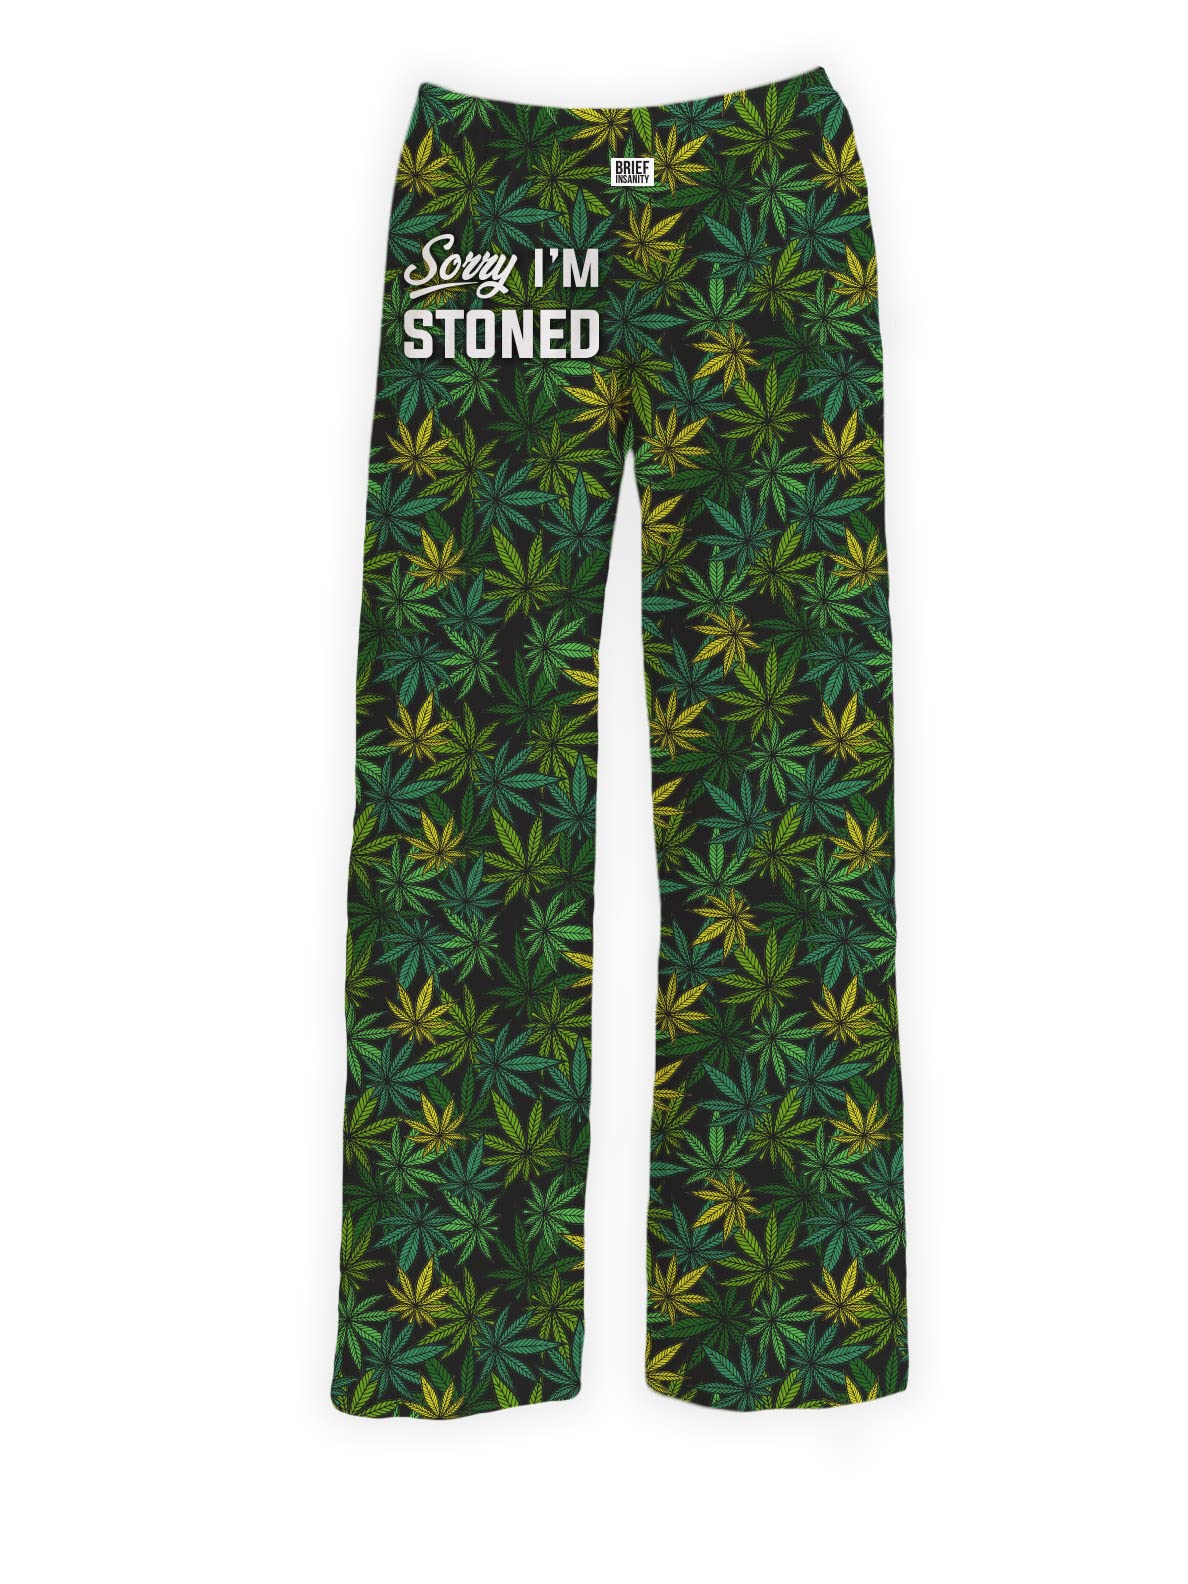 BRIEF INSANITY Sorry I'm Stoned Marijuana Pajama Pants